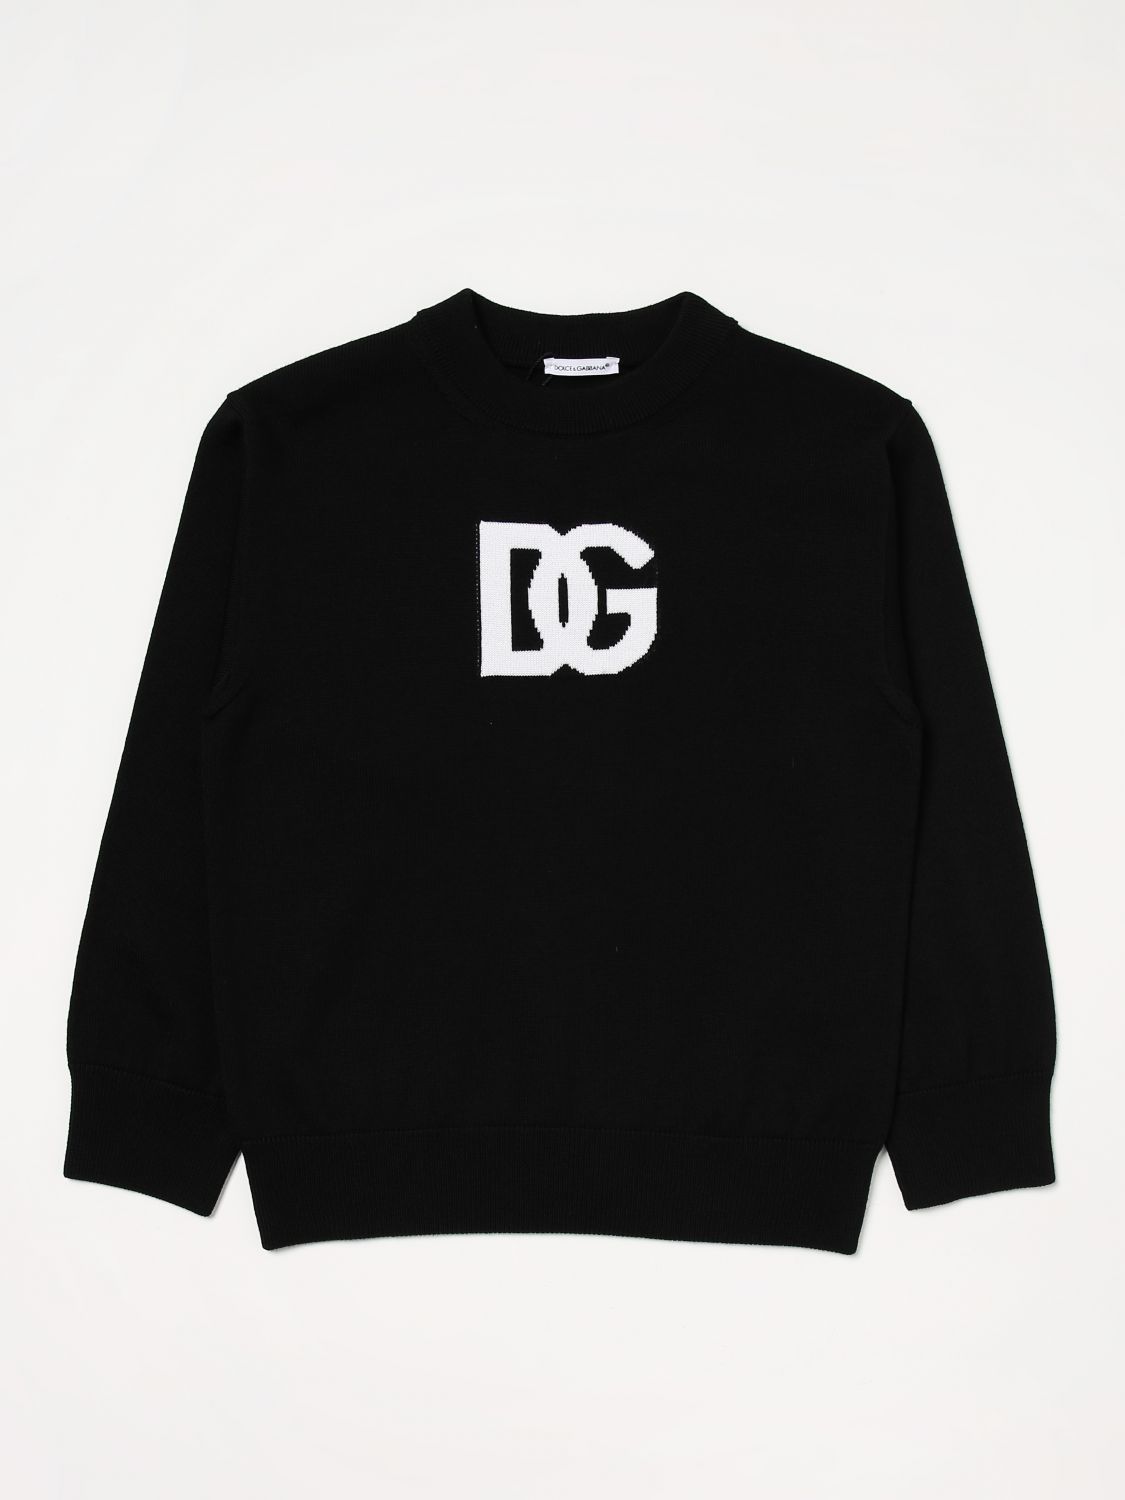 Dolce & Gabbana Kids' Sweater In Virgin Wool In Black